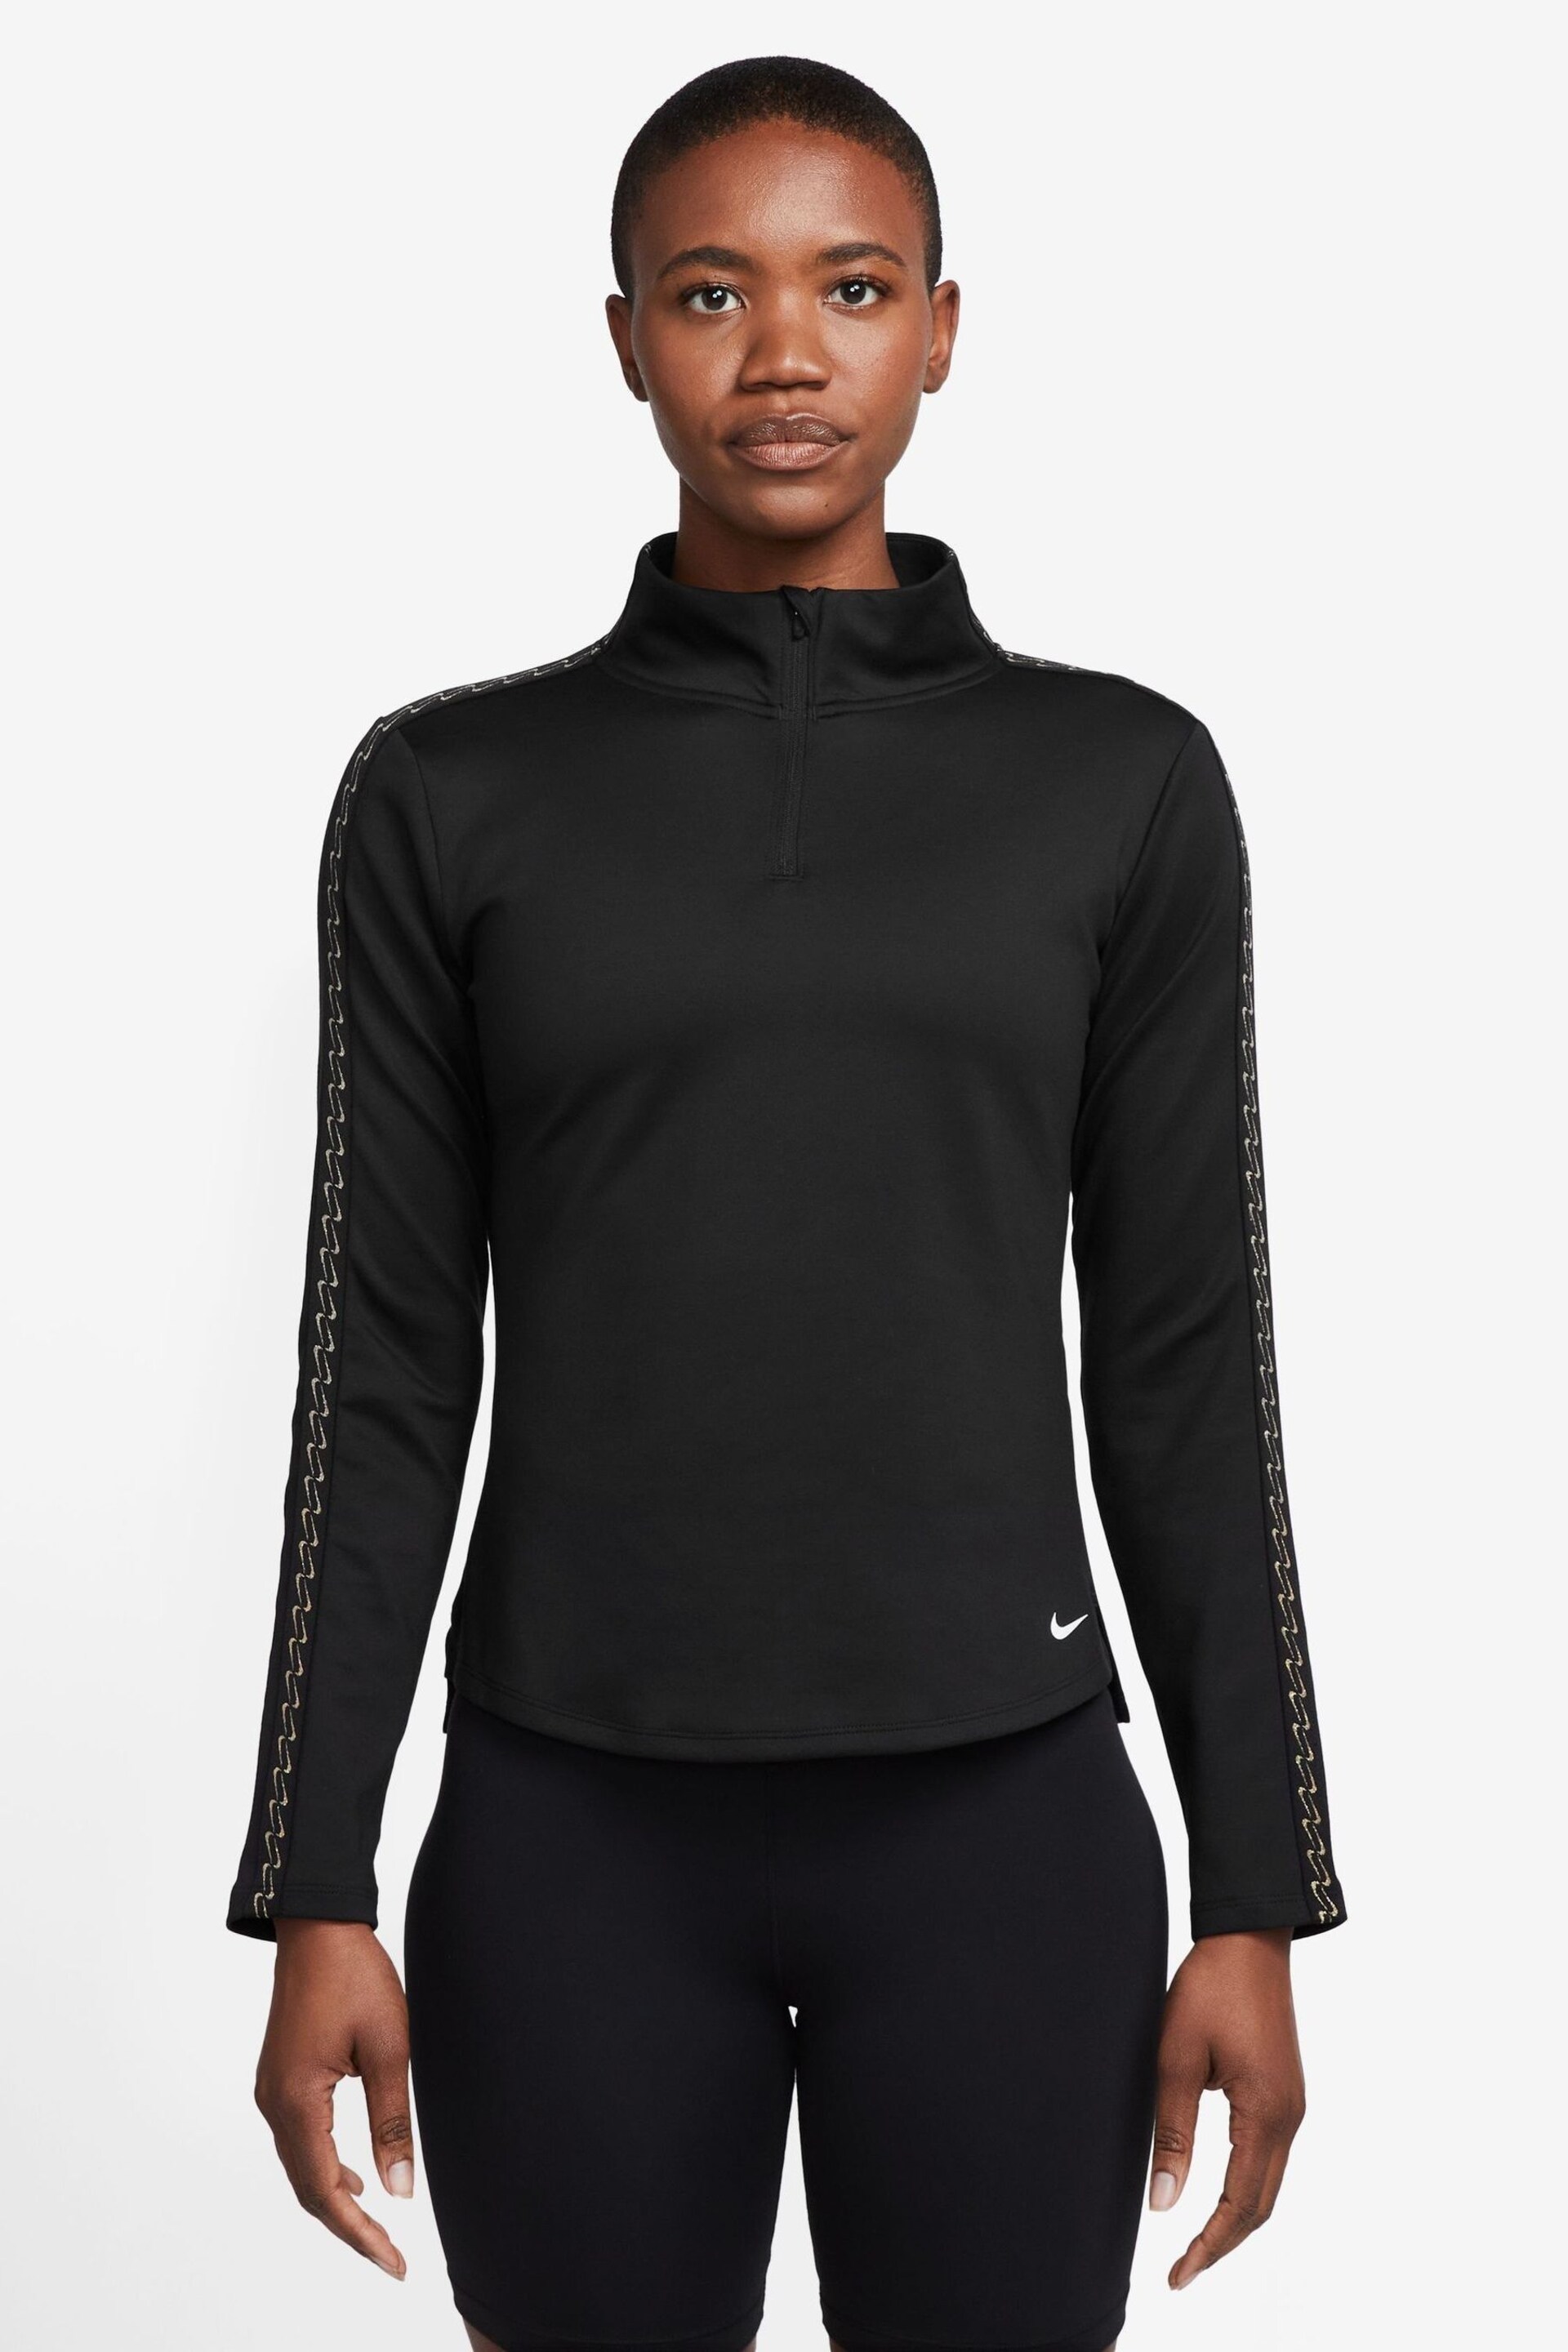 Nike Black Therma-FIT One Half-Zip Top - Image 1 of 3